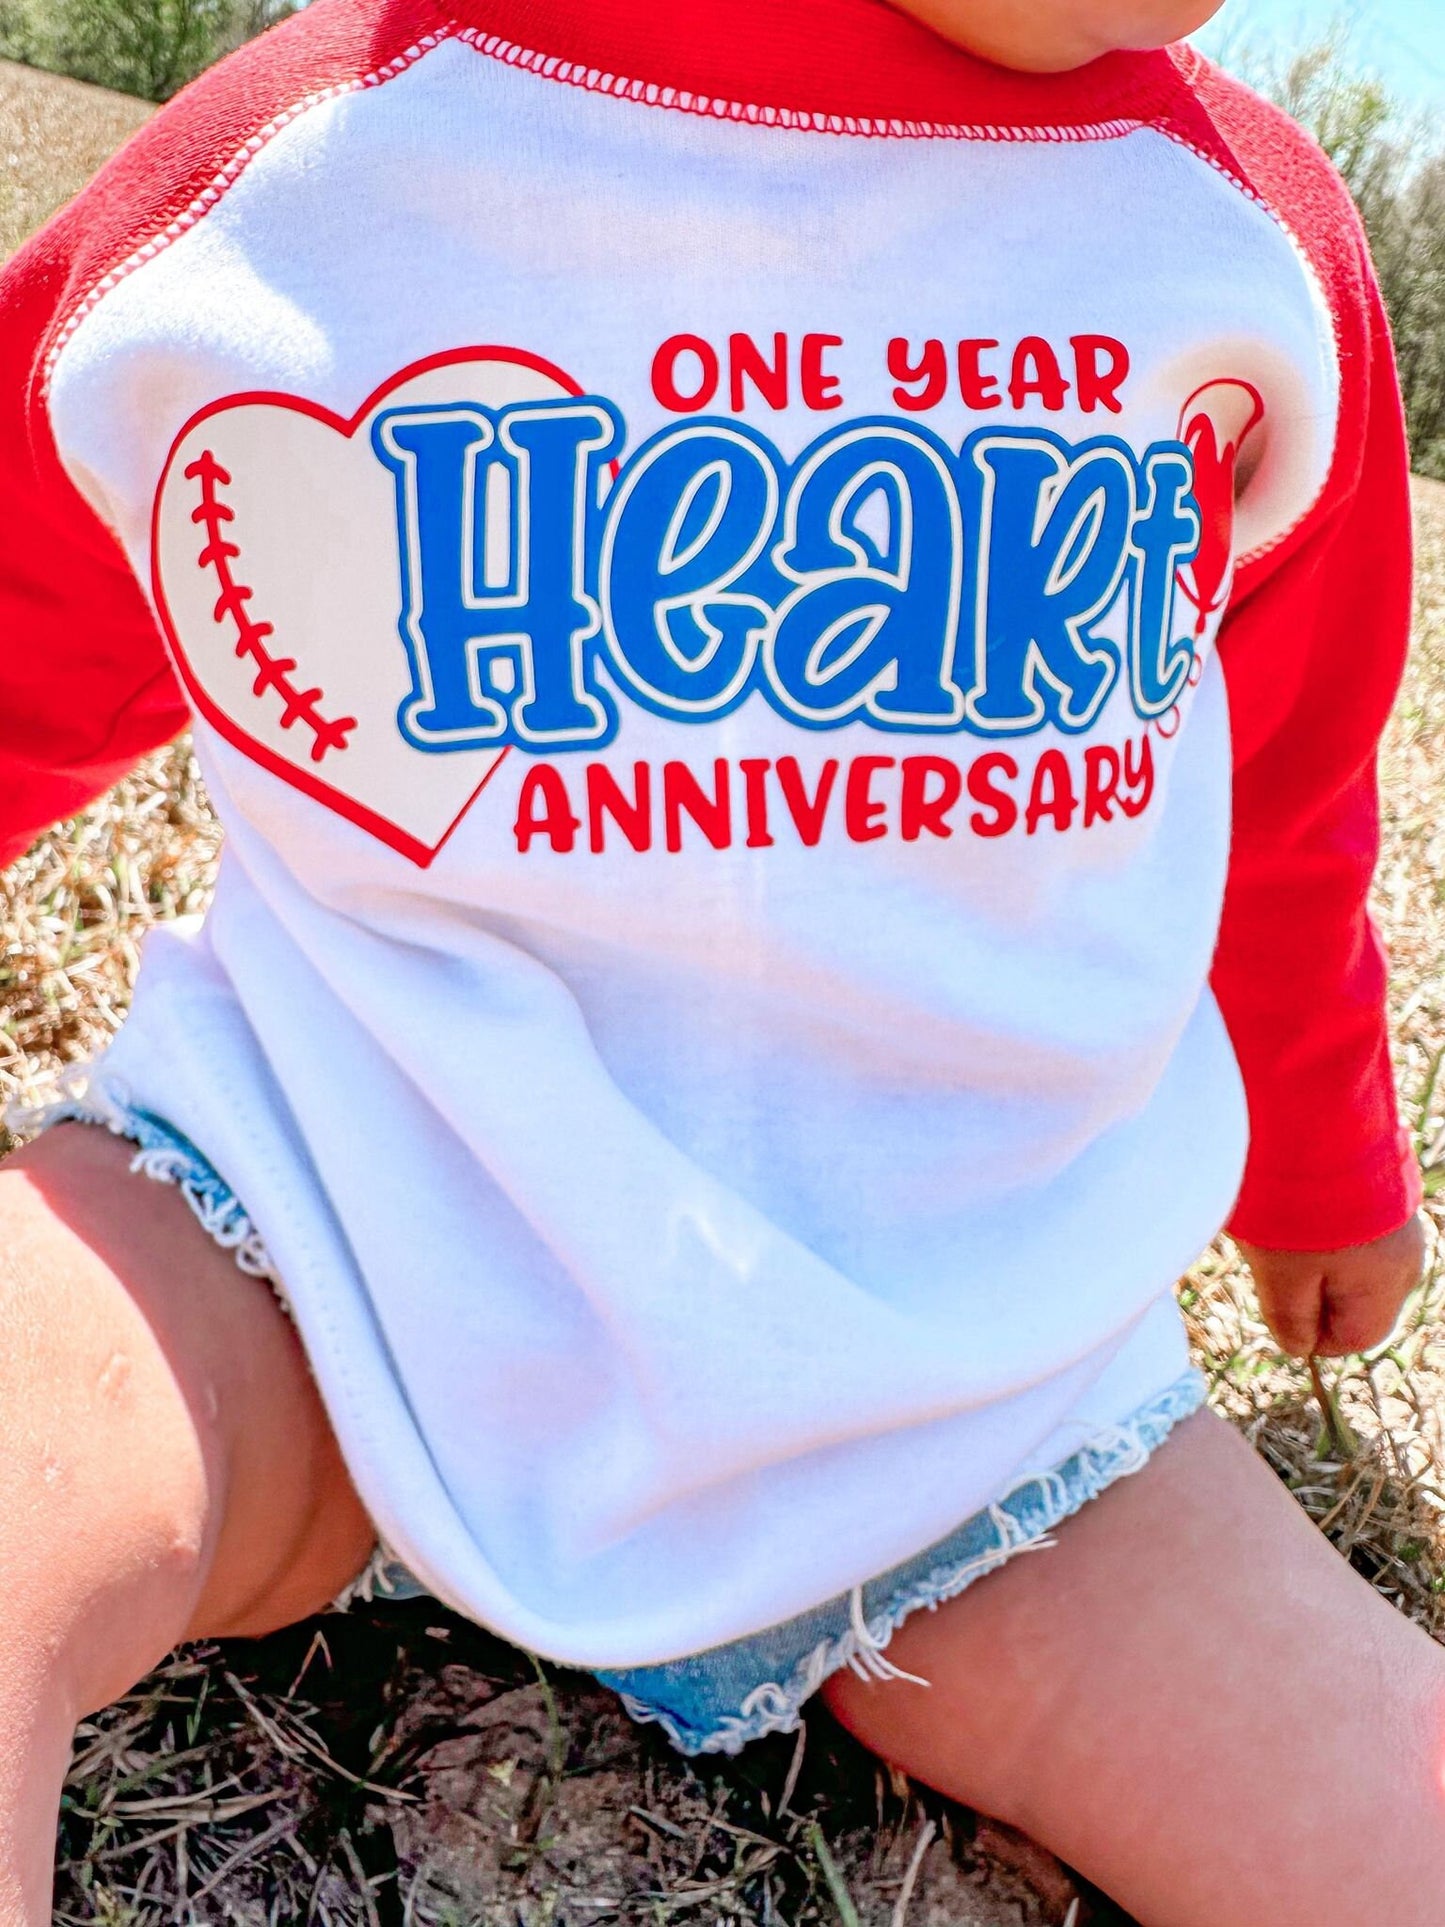 one year heart anniversary | CHD awareness shirt | chd | heart anniversary shirt | chd heart anniversary shirt